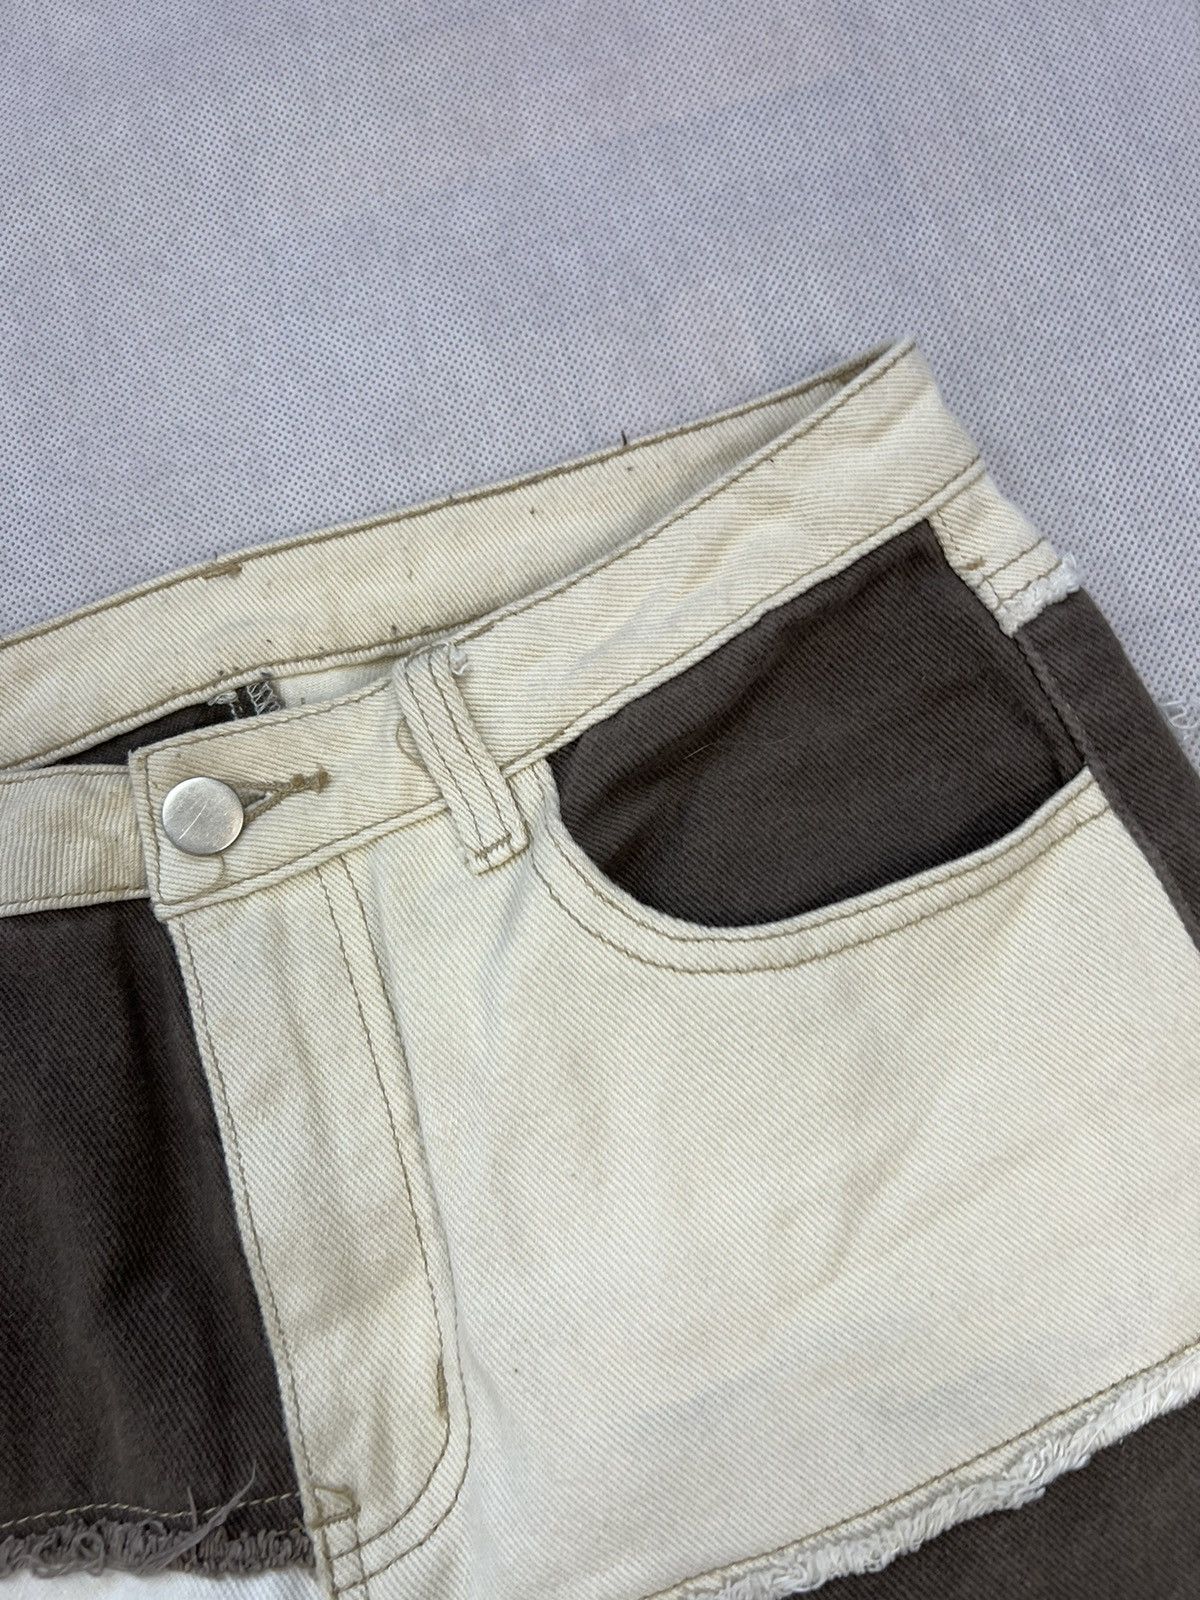 Vintage Great Pants Patchwork y2k baggy Size 27" / US 4 / IT 40 - 4 Thumbnail